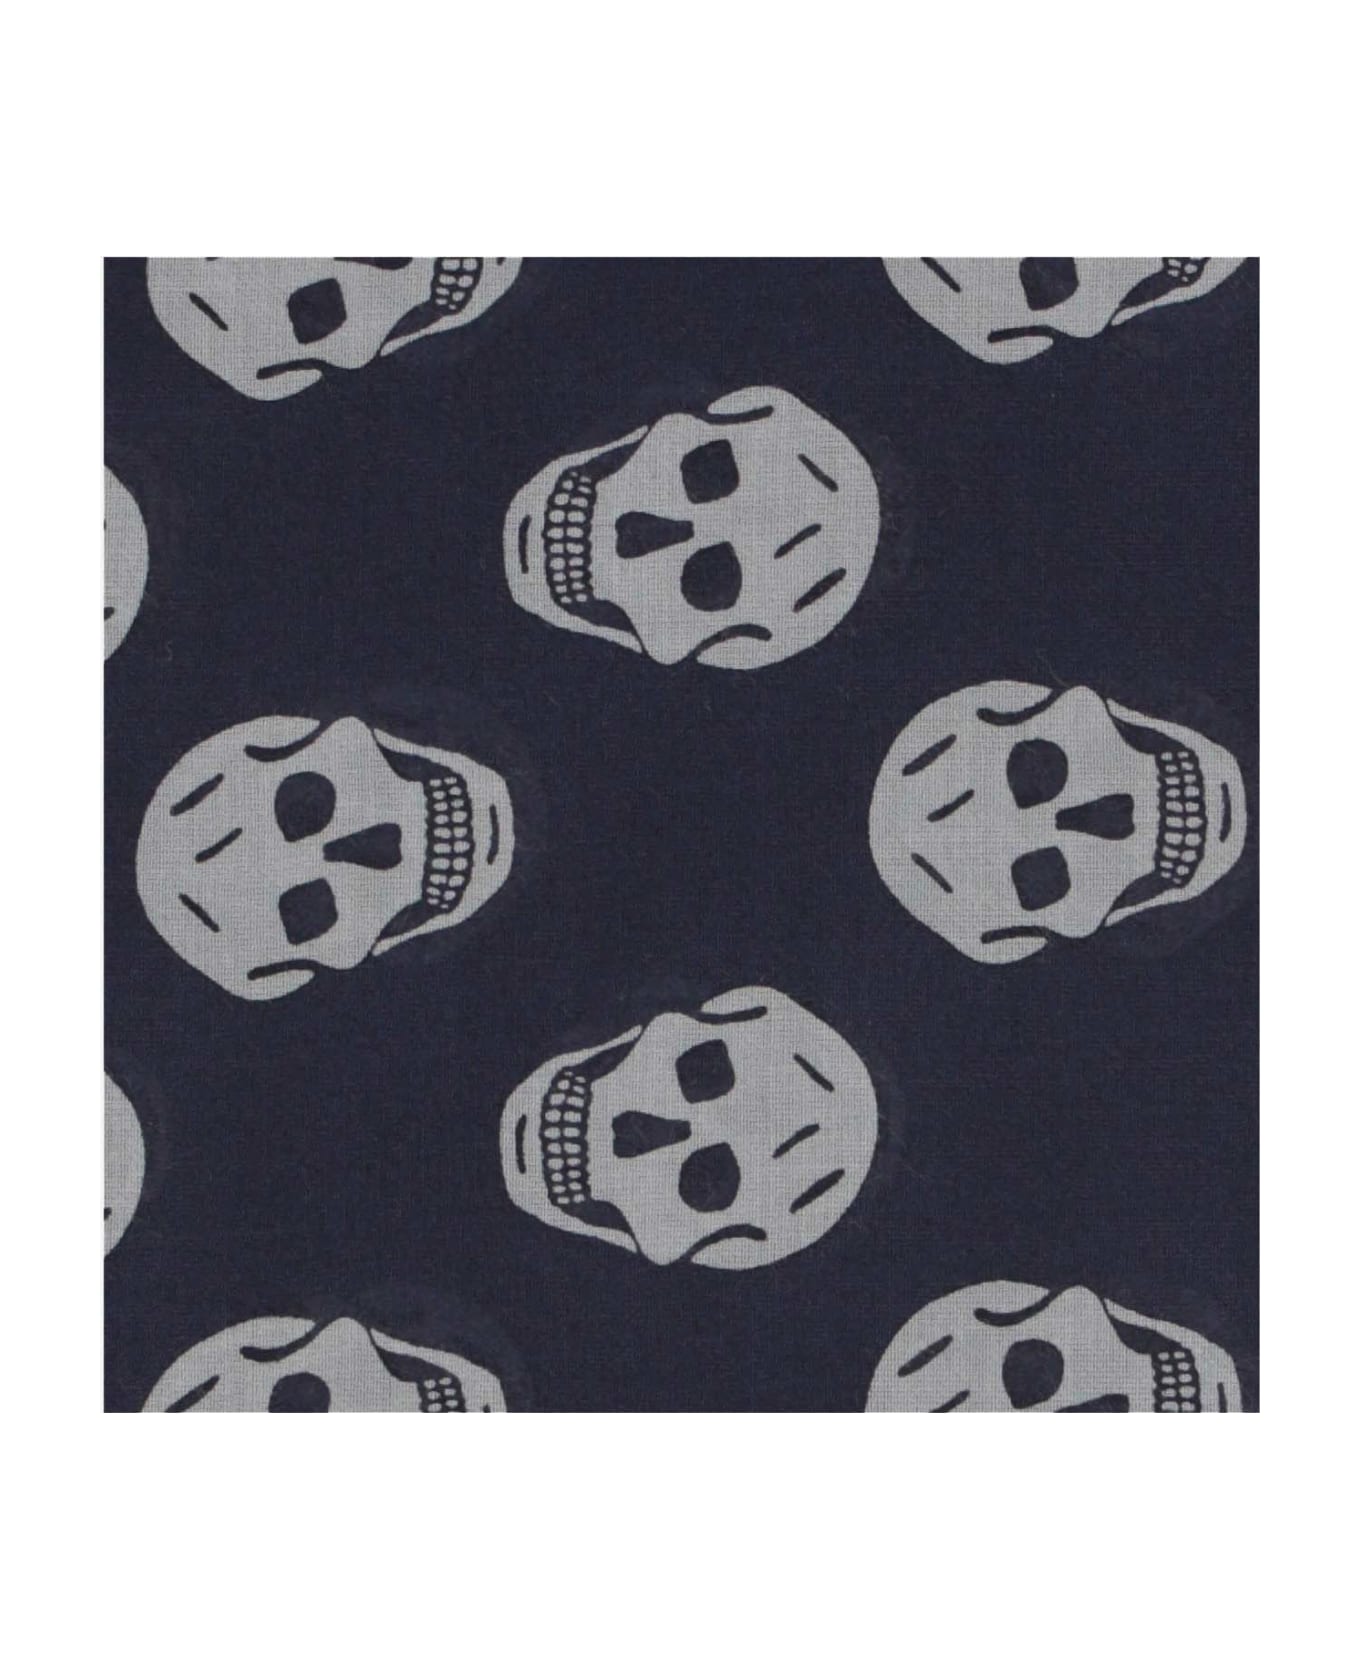 Alexander McQueen Skull Printed Fringed Scarf - Blue スカーフ